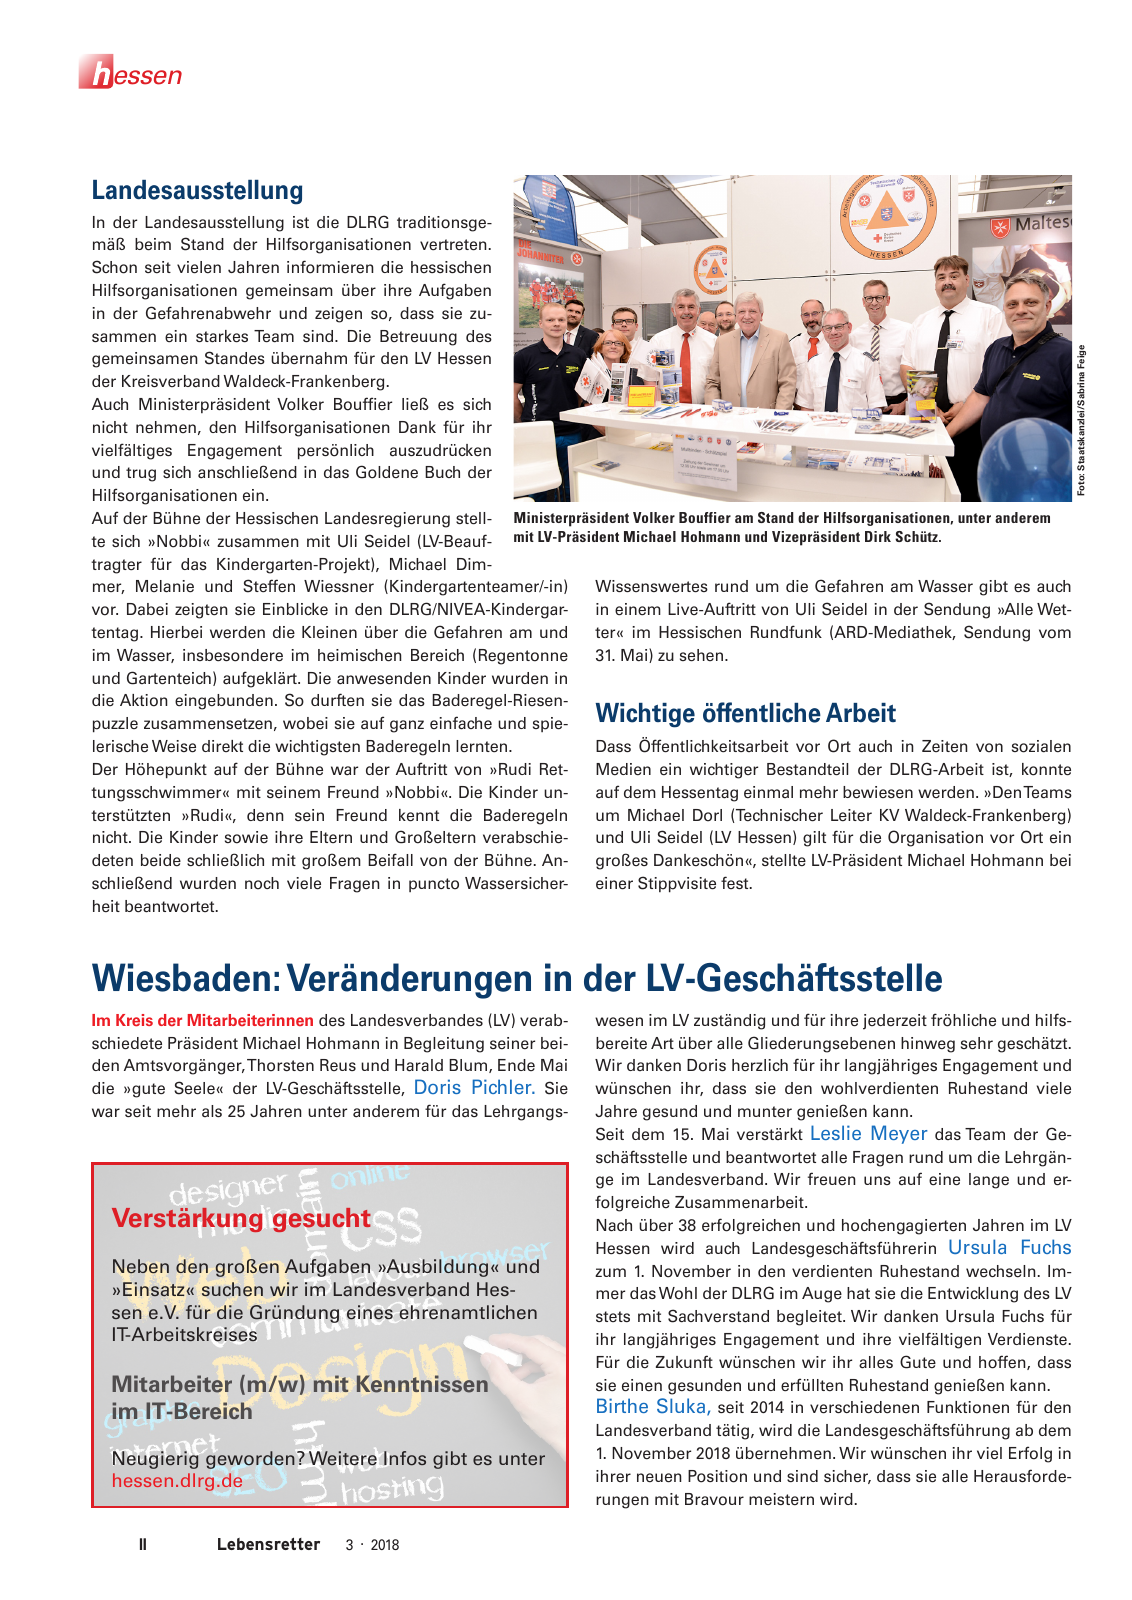 Vorschau Lebensretter 3/2018 - Regionalausgabe Hessen Seite 4